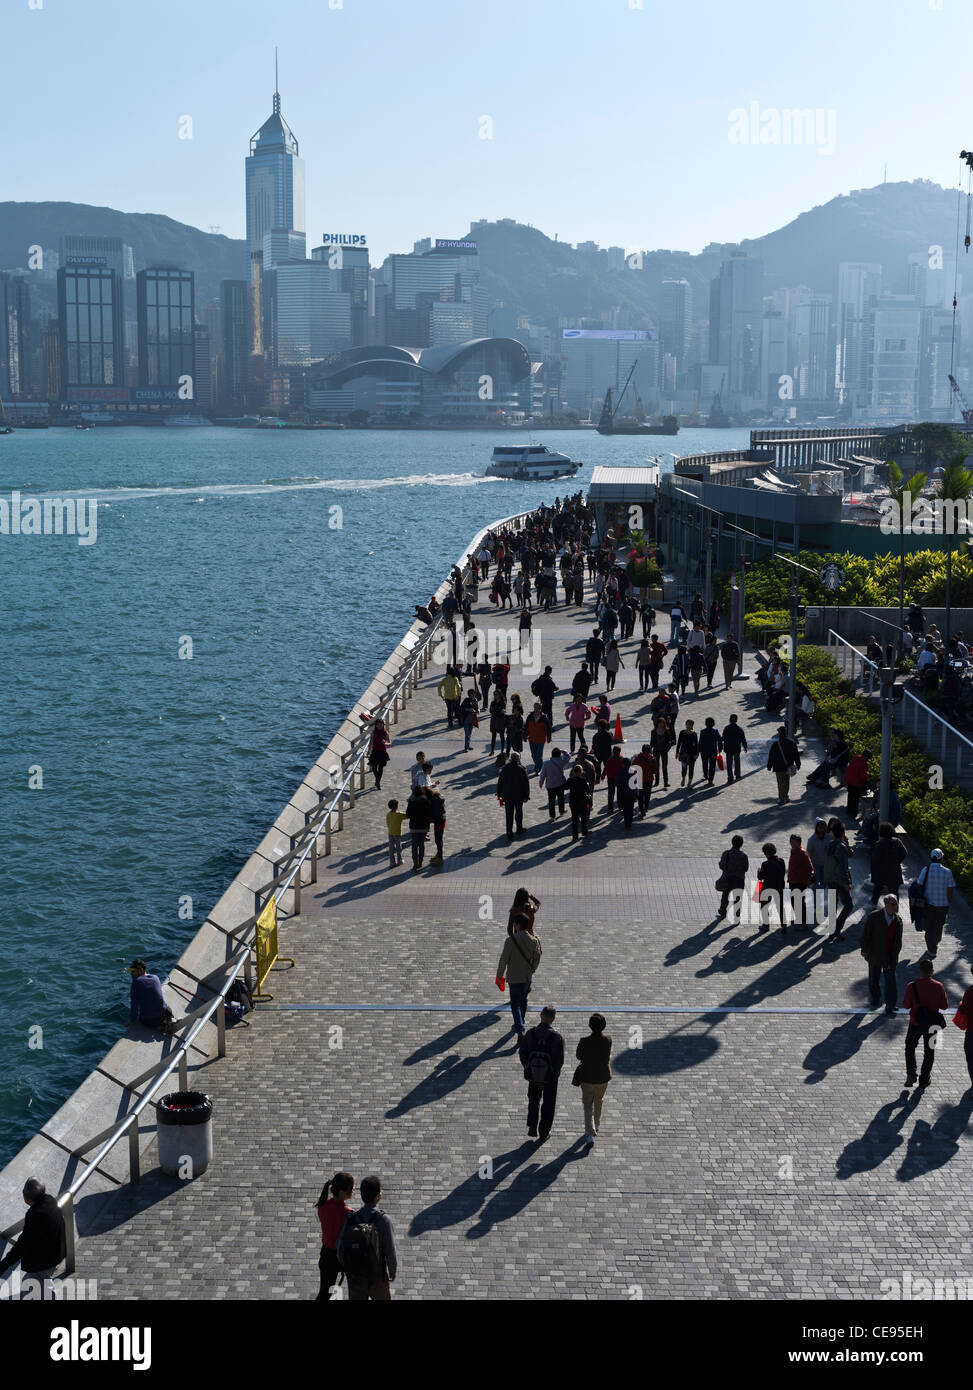 Dh Avenue der Stars Tsim Sha Tsui, Hong Kong Waterfront Hafen Menschen auf der Kowloon Promenade zu Fuß Menge Ufergegenden Stockfoto